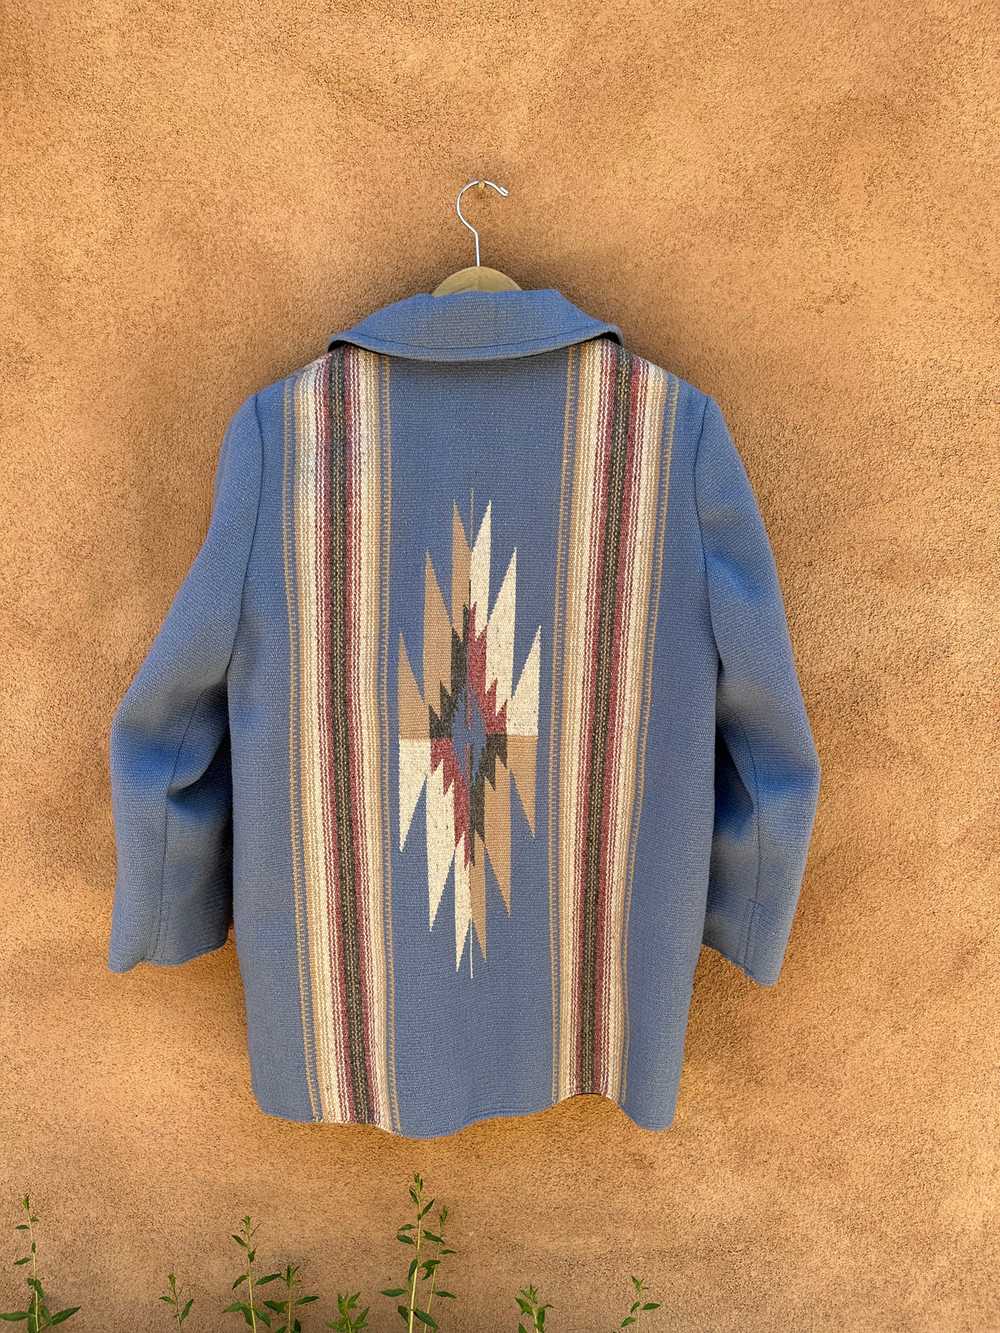 Blue Chimayo Handwoven Wool Jacket - image 2